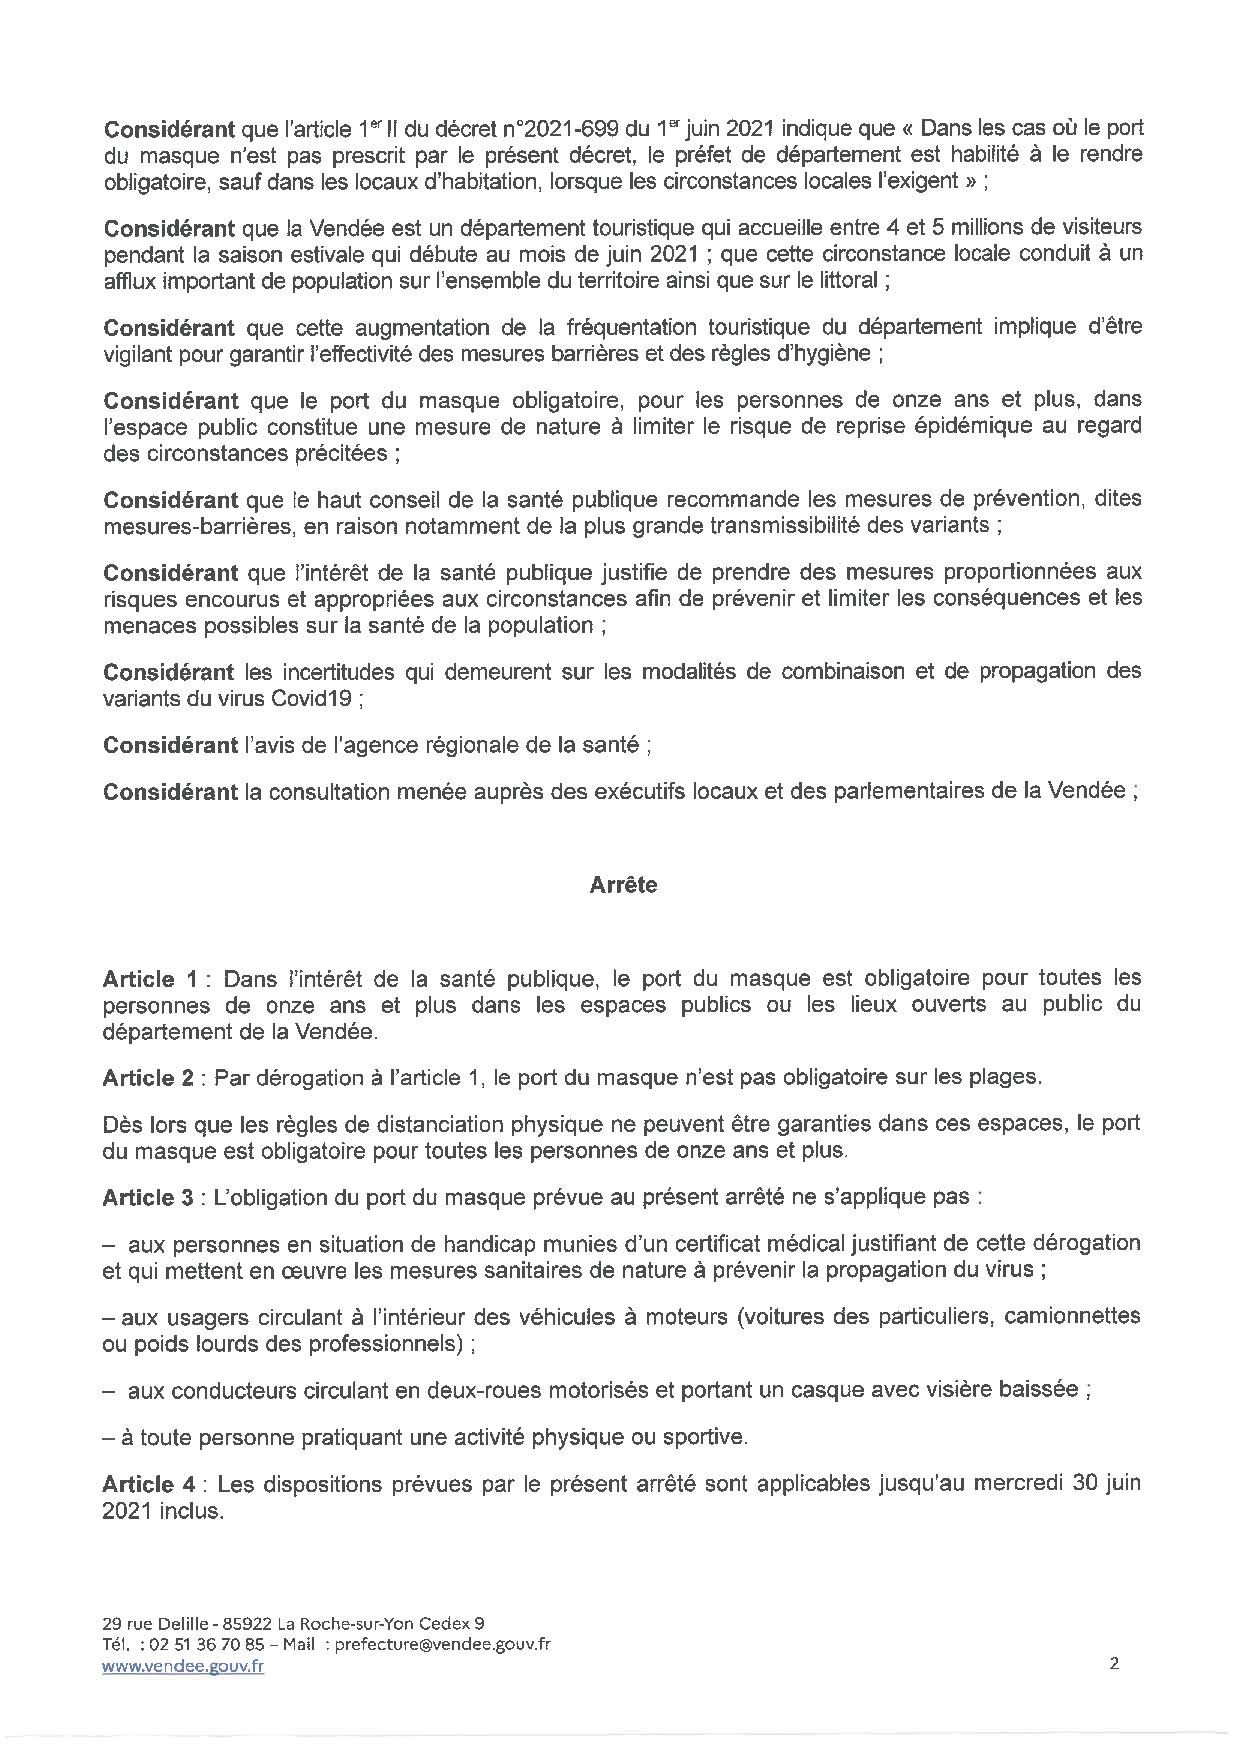 Evolution de l'obligation du port du masque pour les personnes de onze et plus dans toutes les communes du département de la Vendée